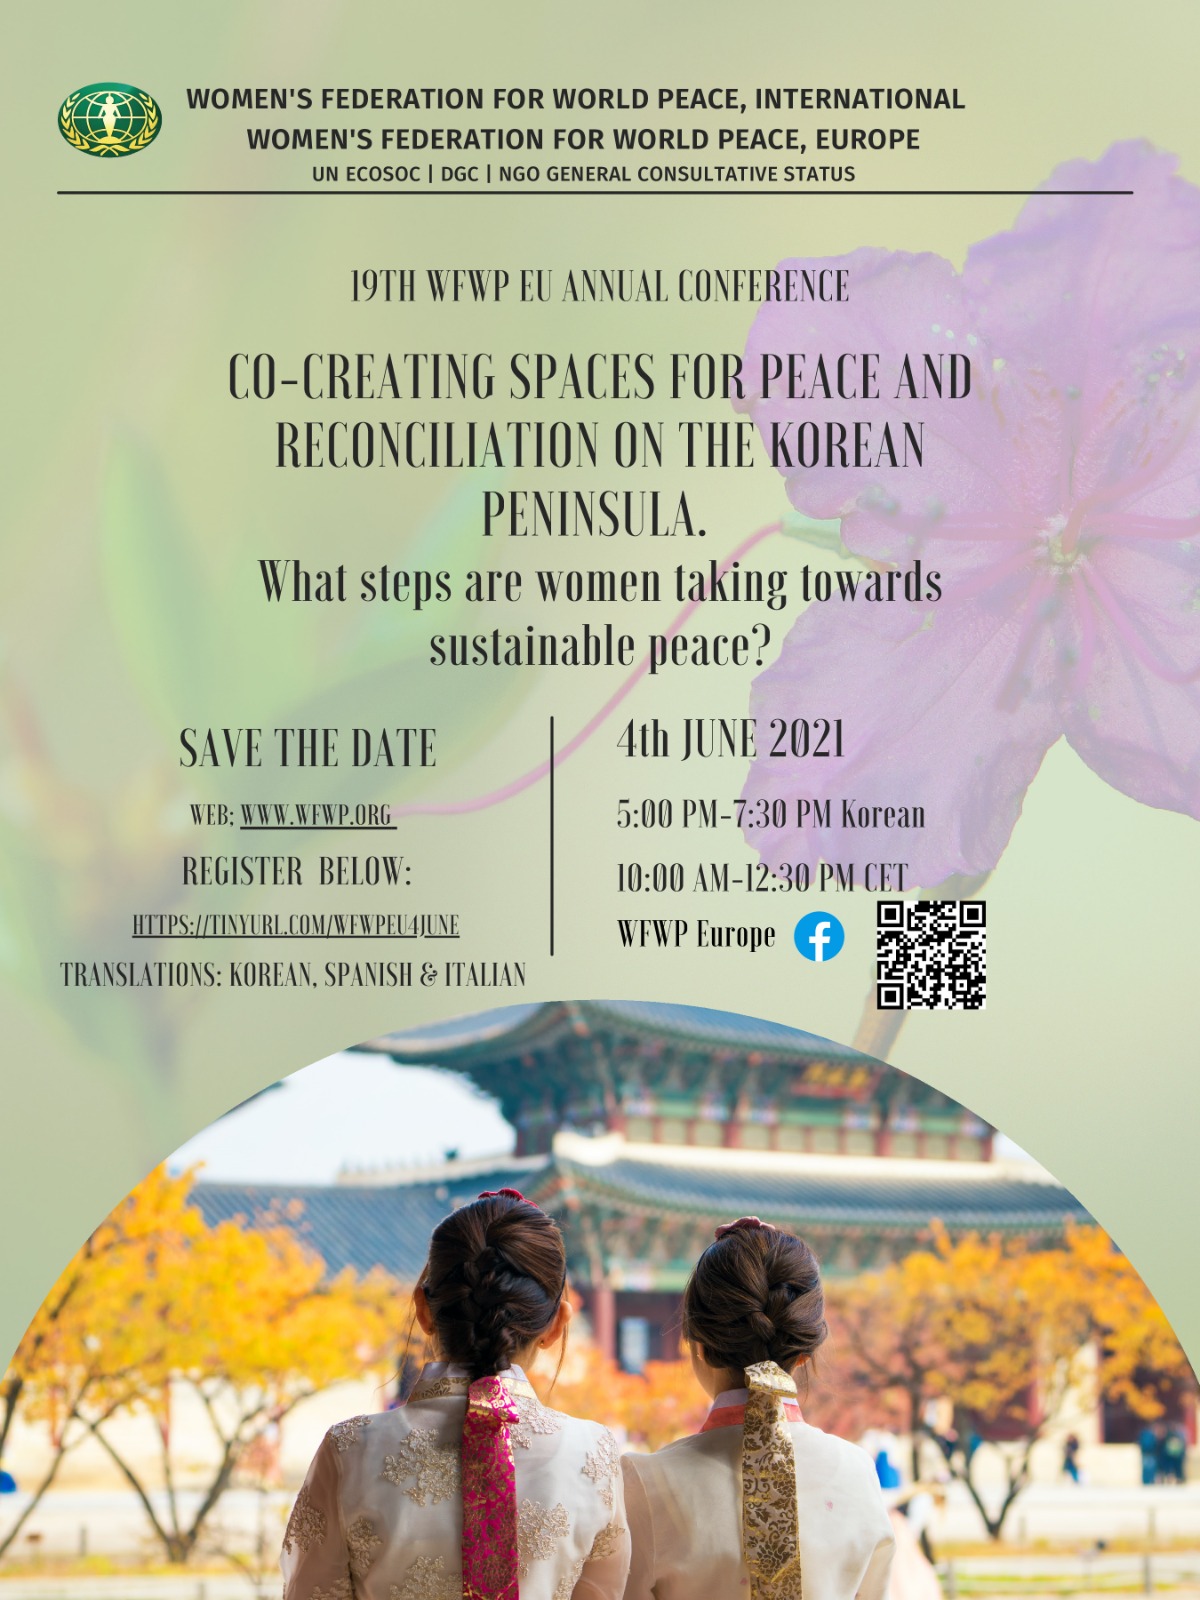 https://wfwp-france.org/co-creer-des-espaces-de-paix-et-de-reconciliation-dans-la-peninsule-coreenne-quelles-mesures-prennent-les-femmes-pour-une-paix-durable/